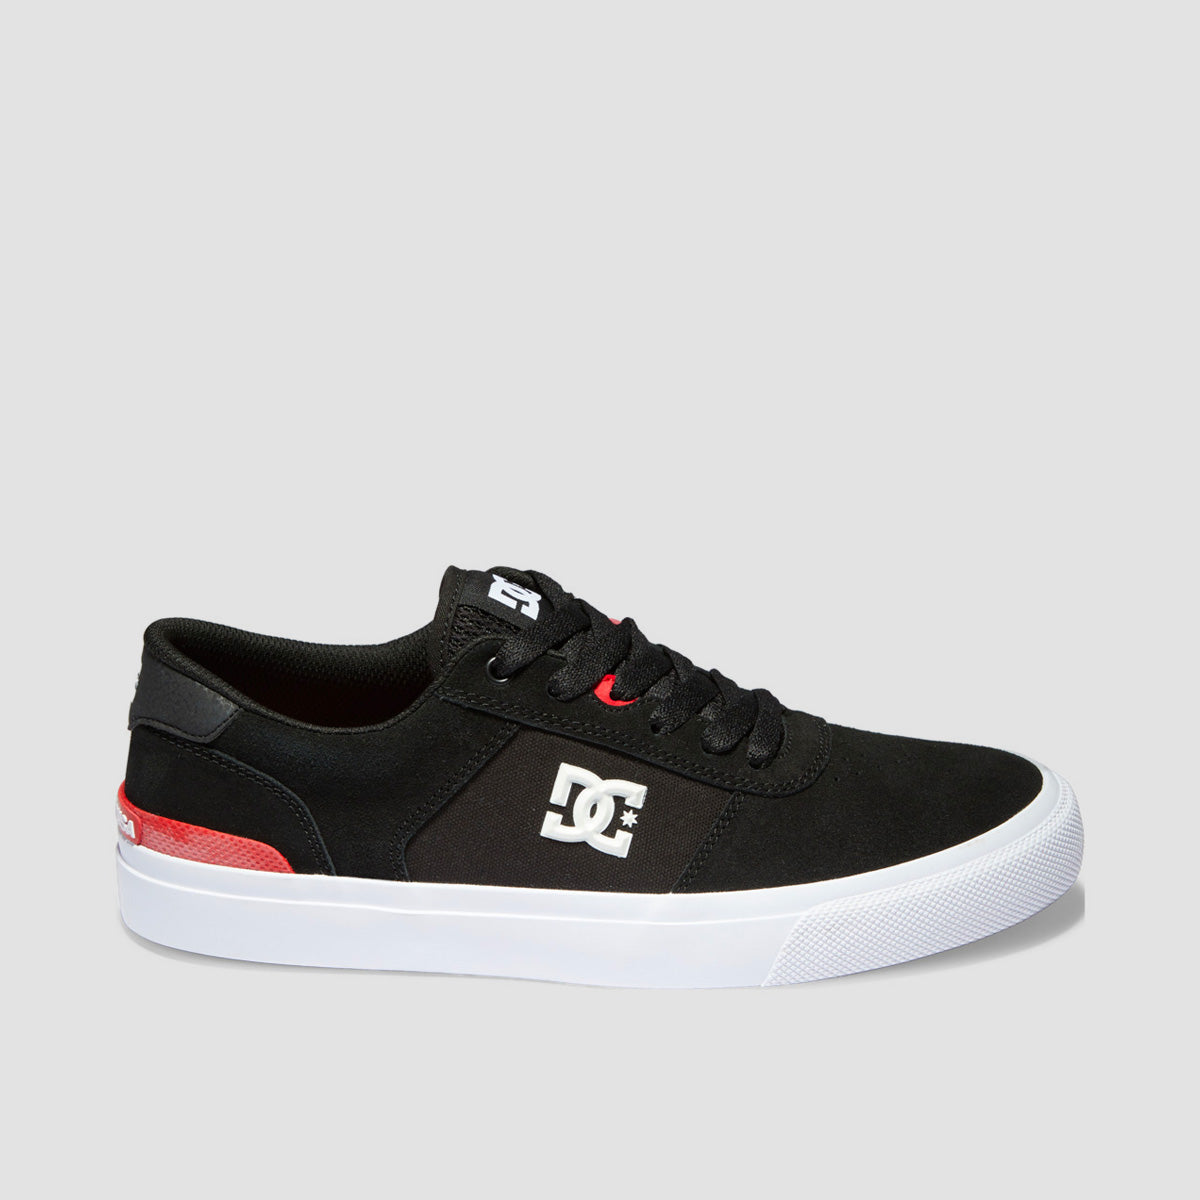 DC Teknic S Shoes - Black/White